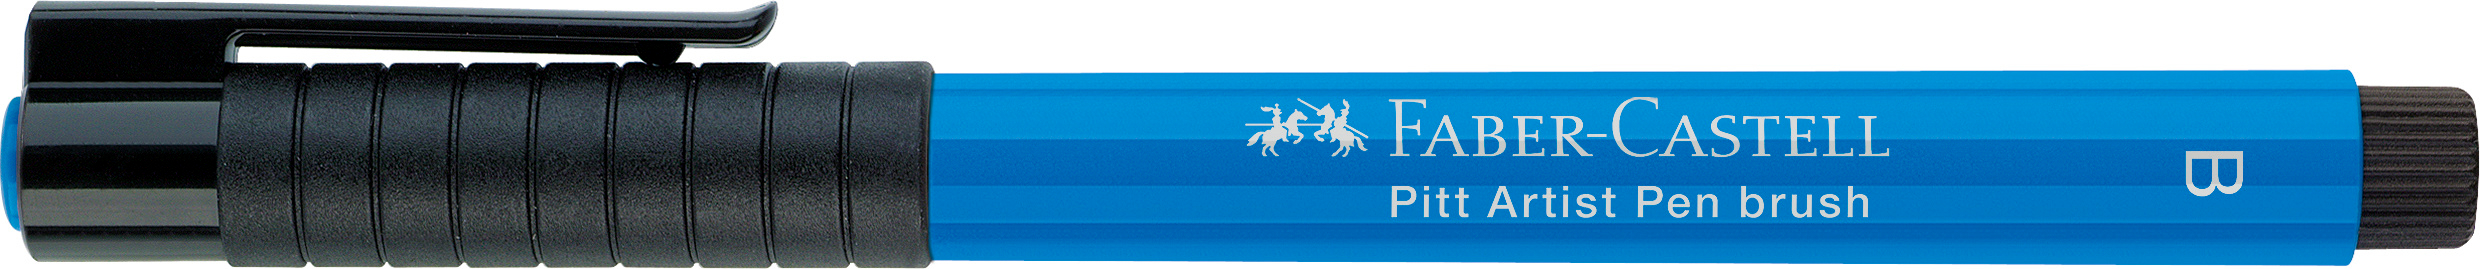 FABER-CASTELL Pitt Artist Pen Brush 2.5mm 167410 phthalo blue